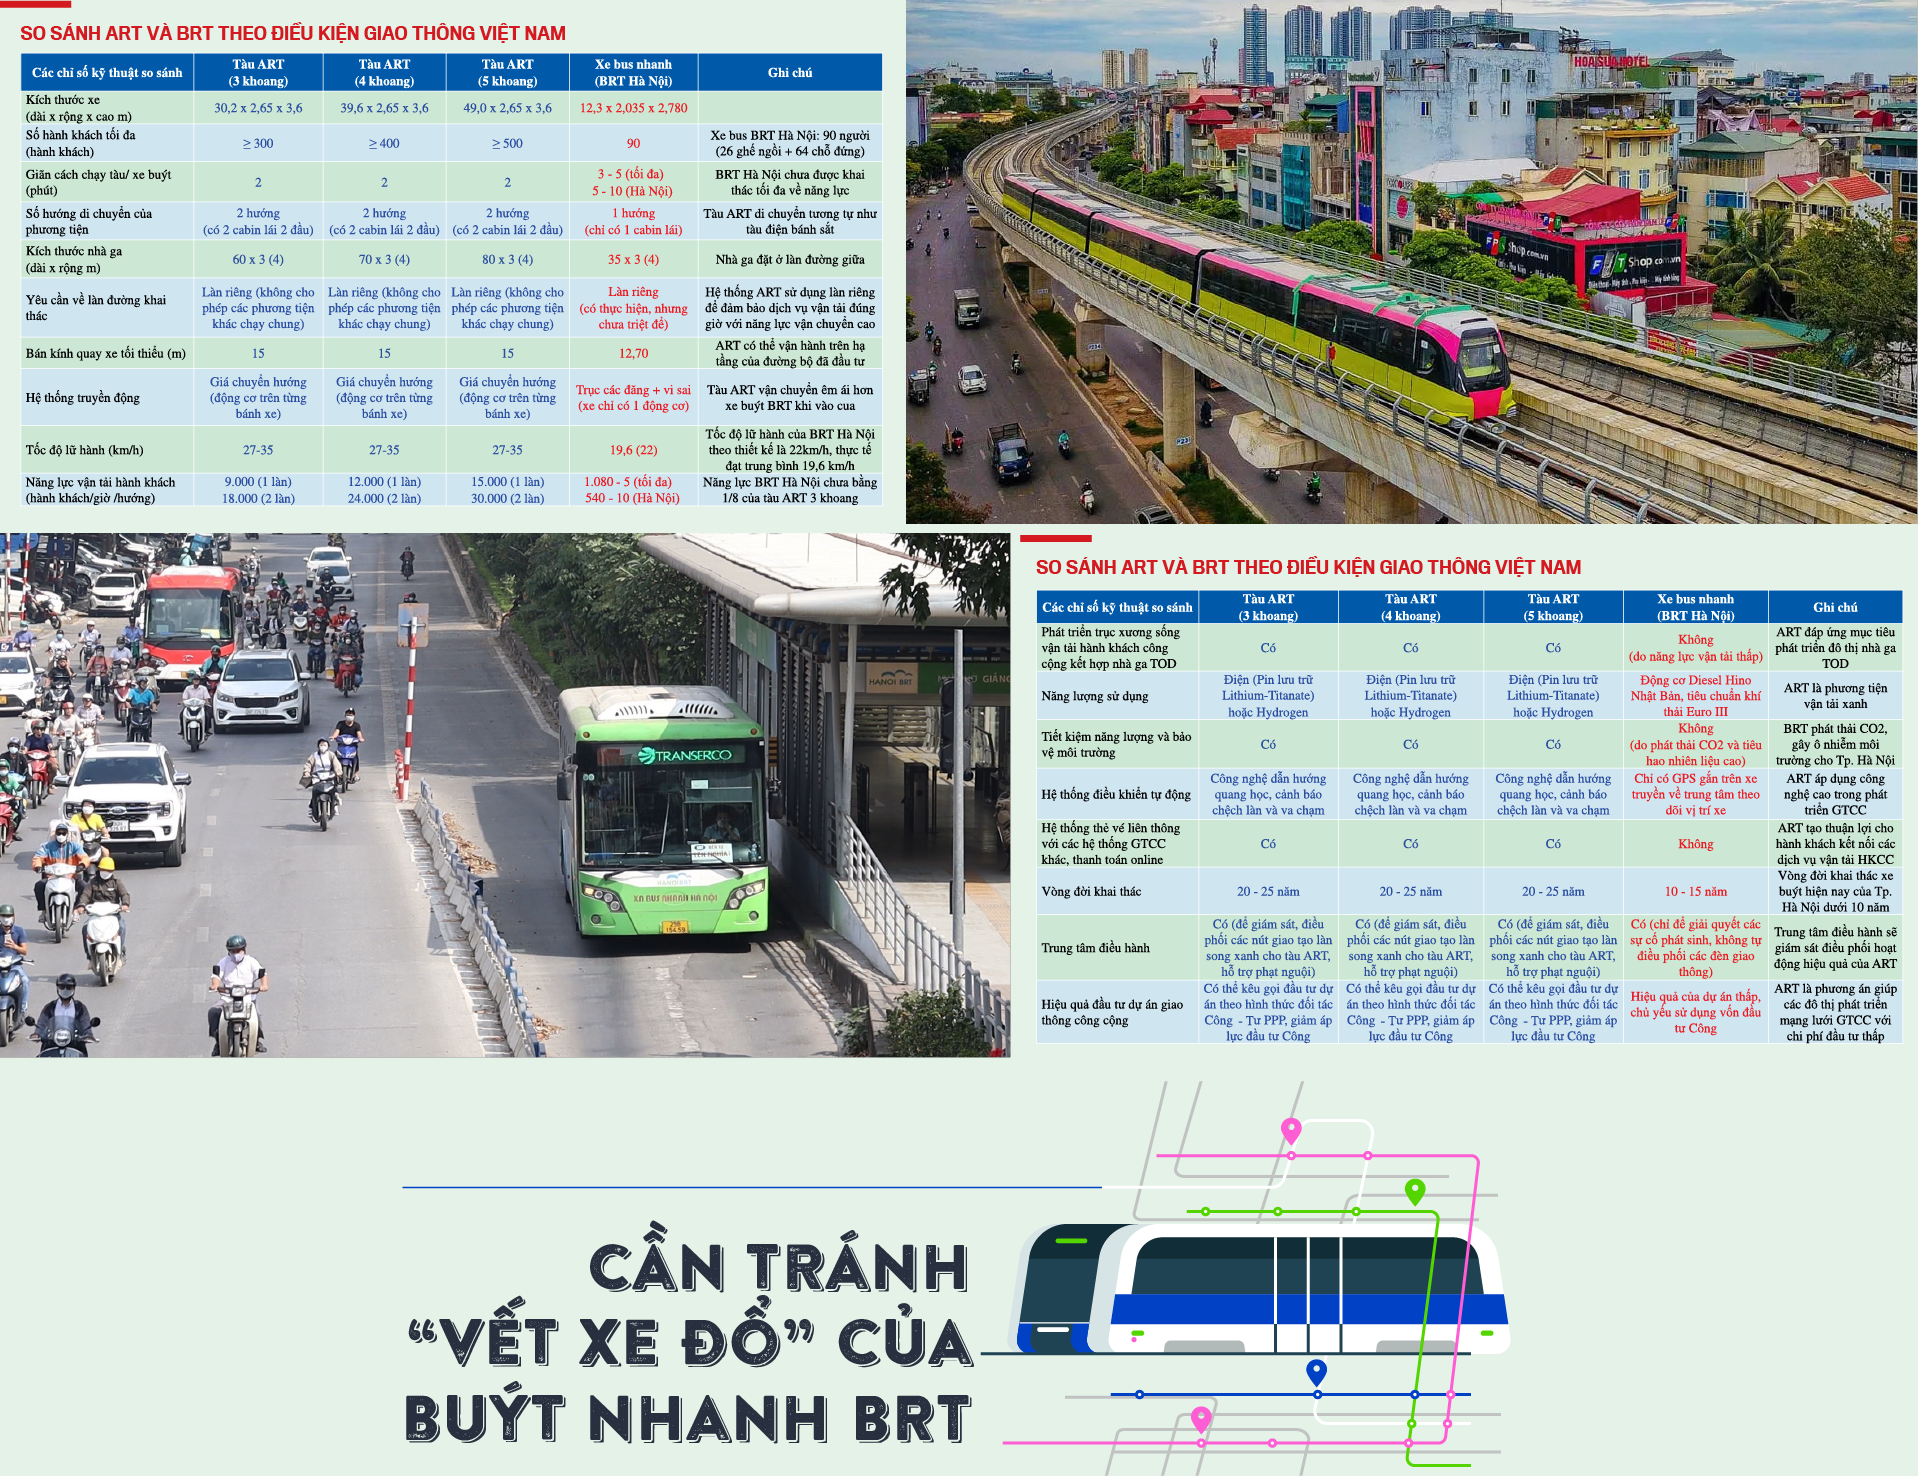 Đề xuất xây dựng tuyến tàu điện không ray ART tại Hà Nội - Ảnh 6